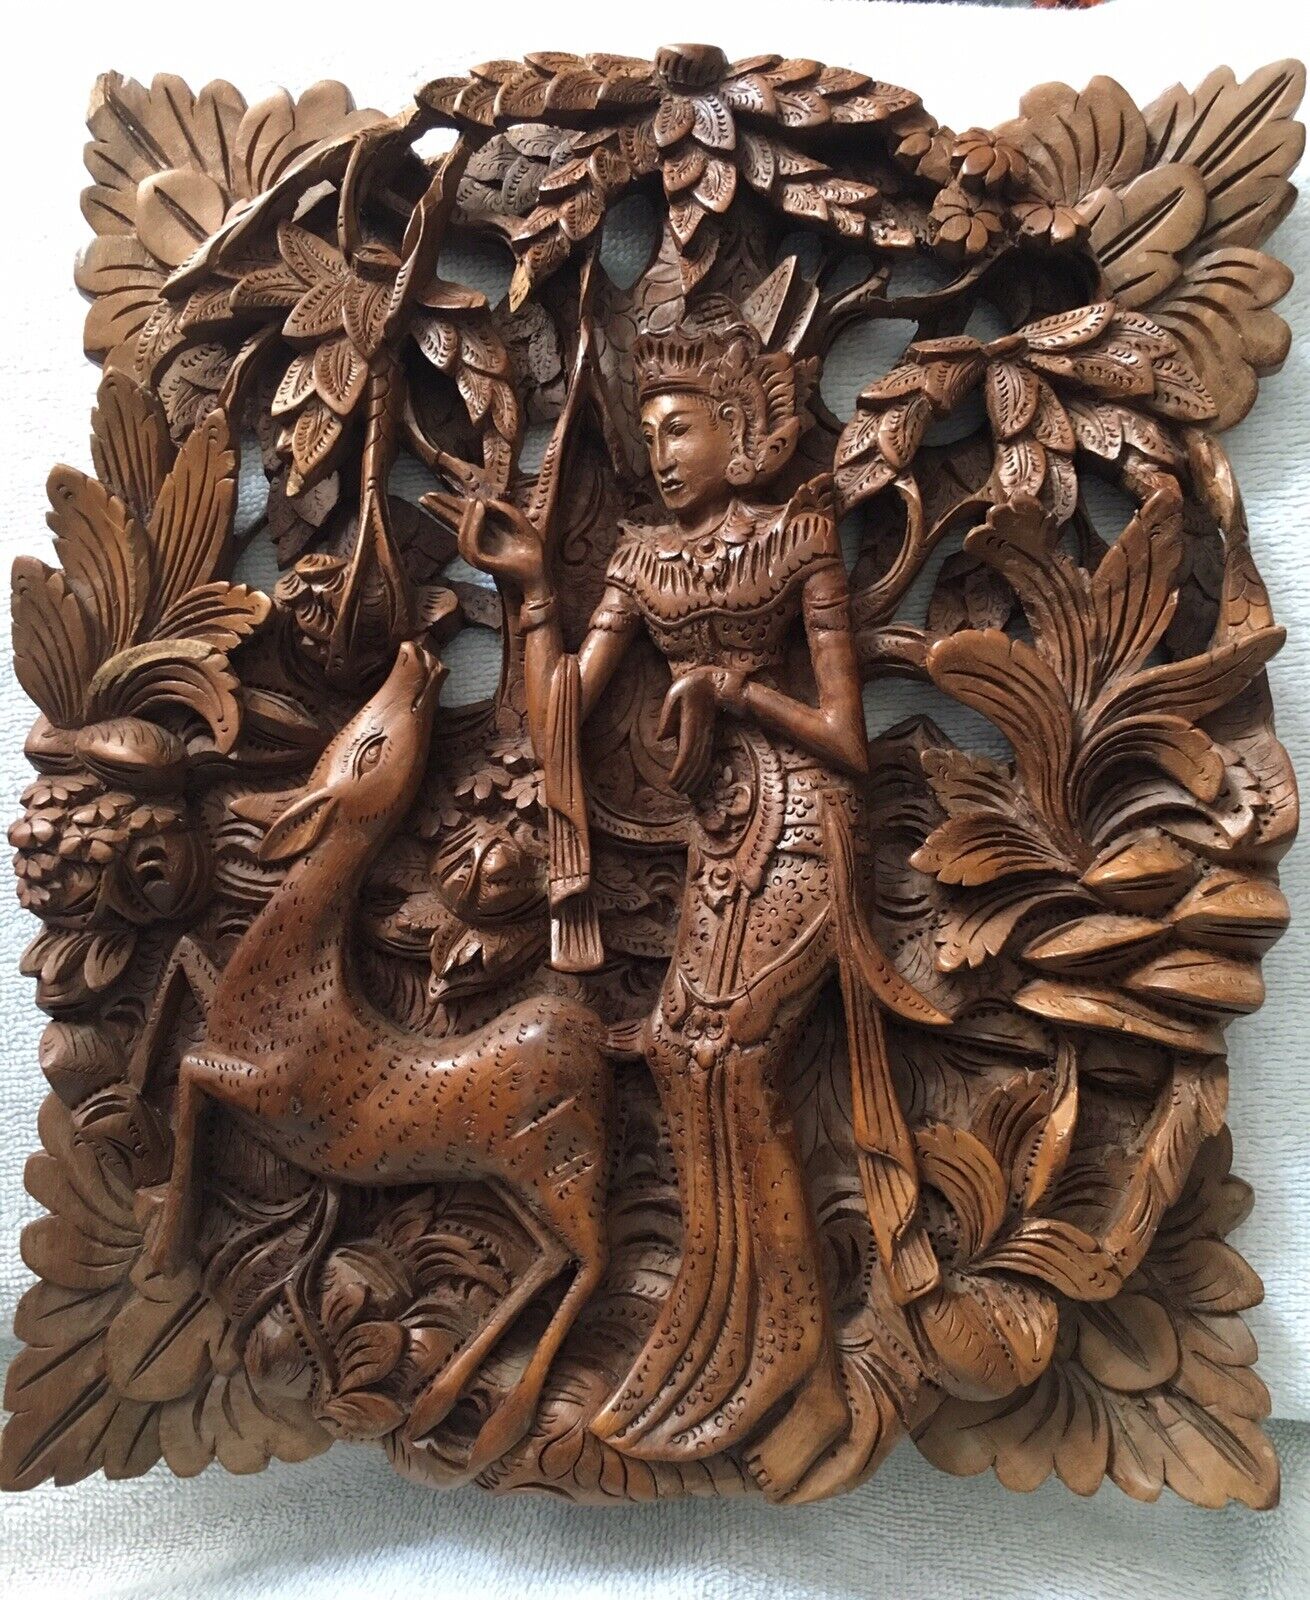 Hand Carved Balinese Relief Art Panel - Sita & Golden Deer from Hindu \